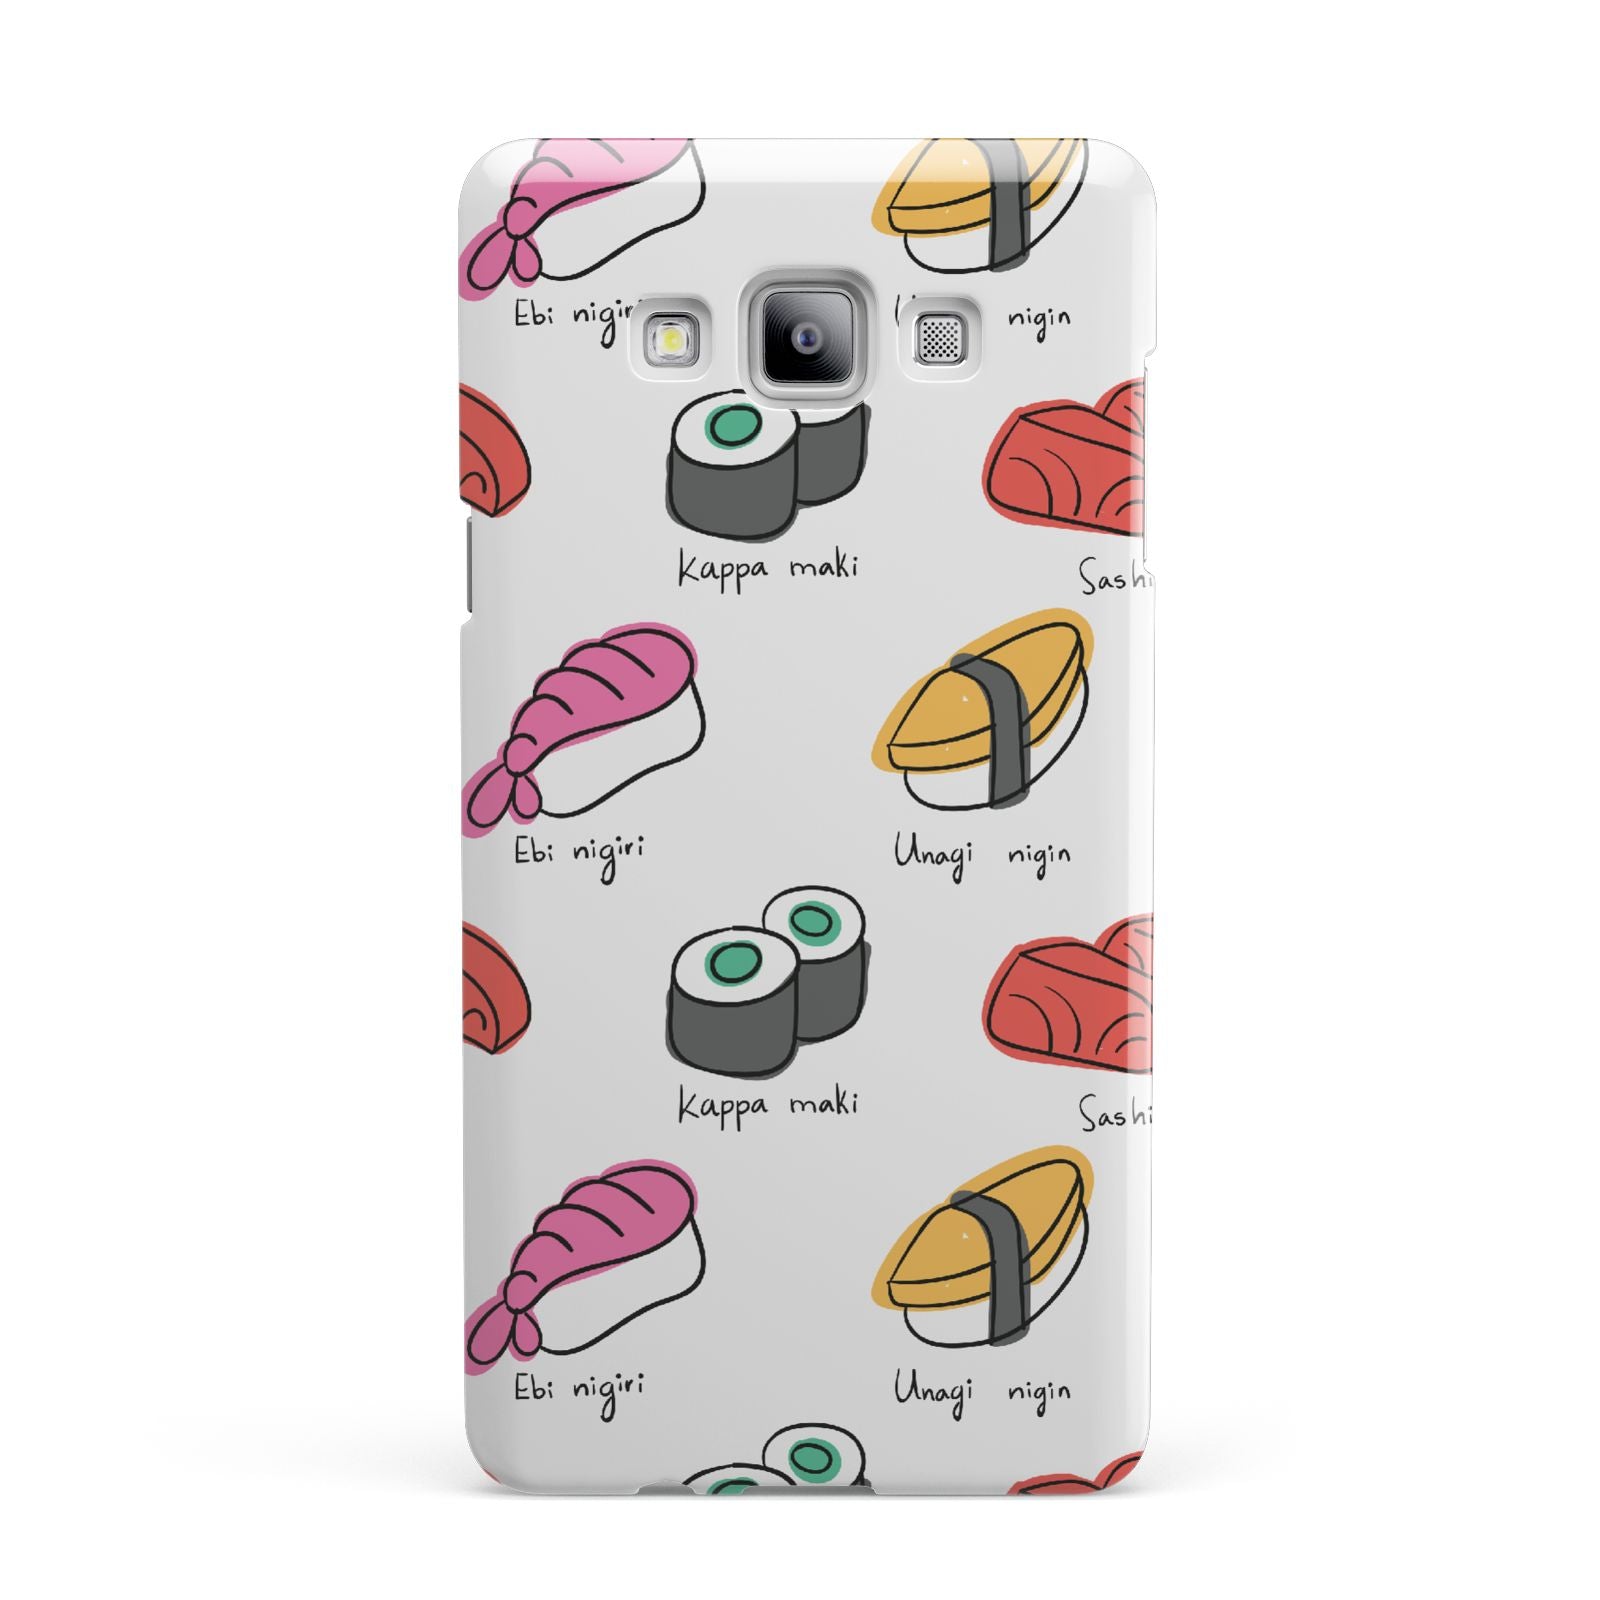 Sashimi Kappa Maki Sushi Samsung Galaxy A7 2015 Case